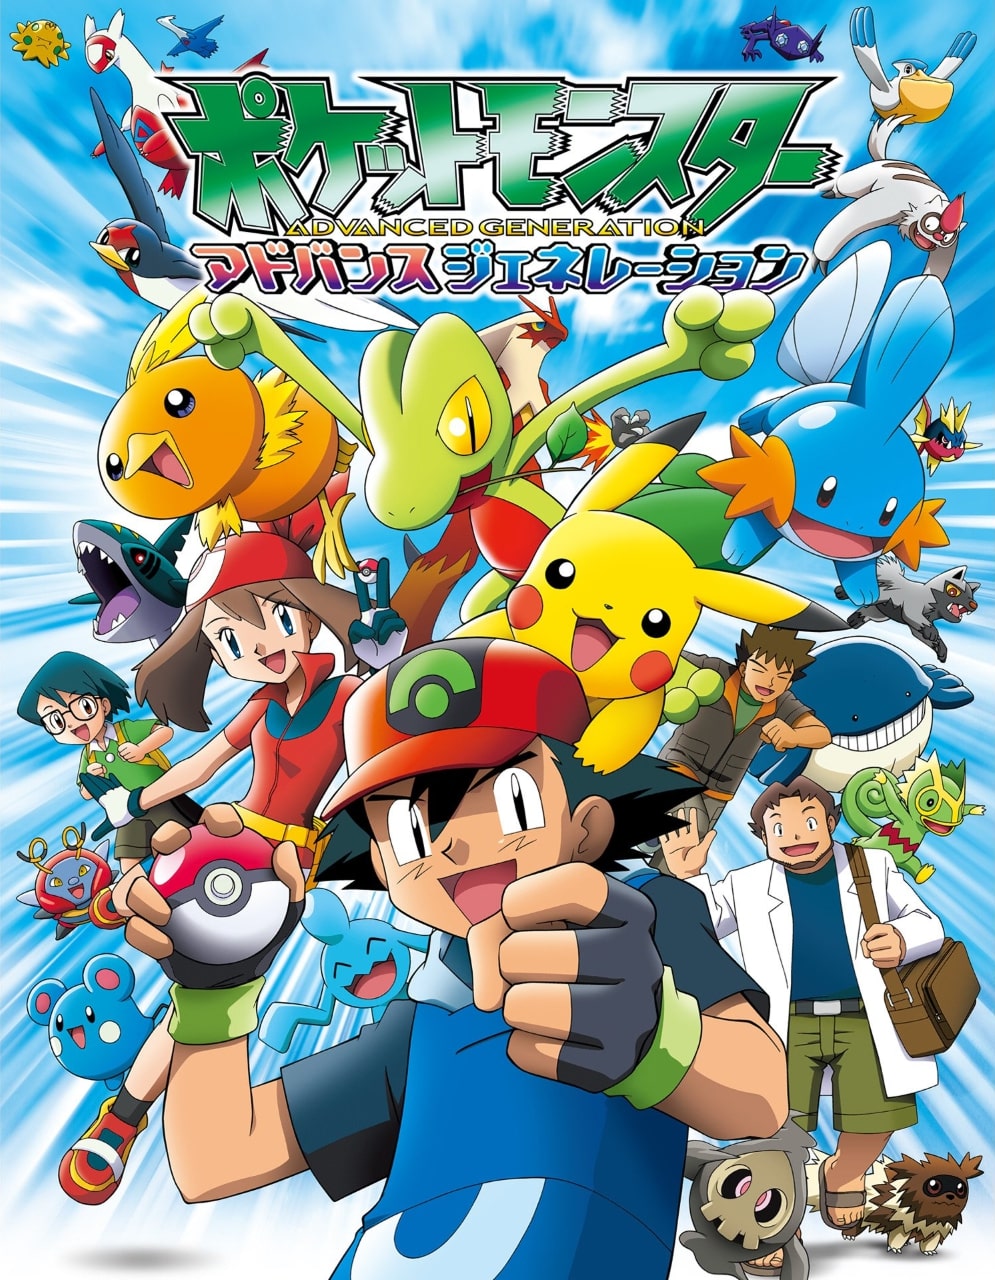 Pokémon: Ventos de Paldea está disponível dublado no